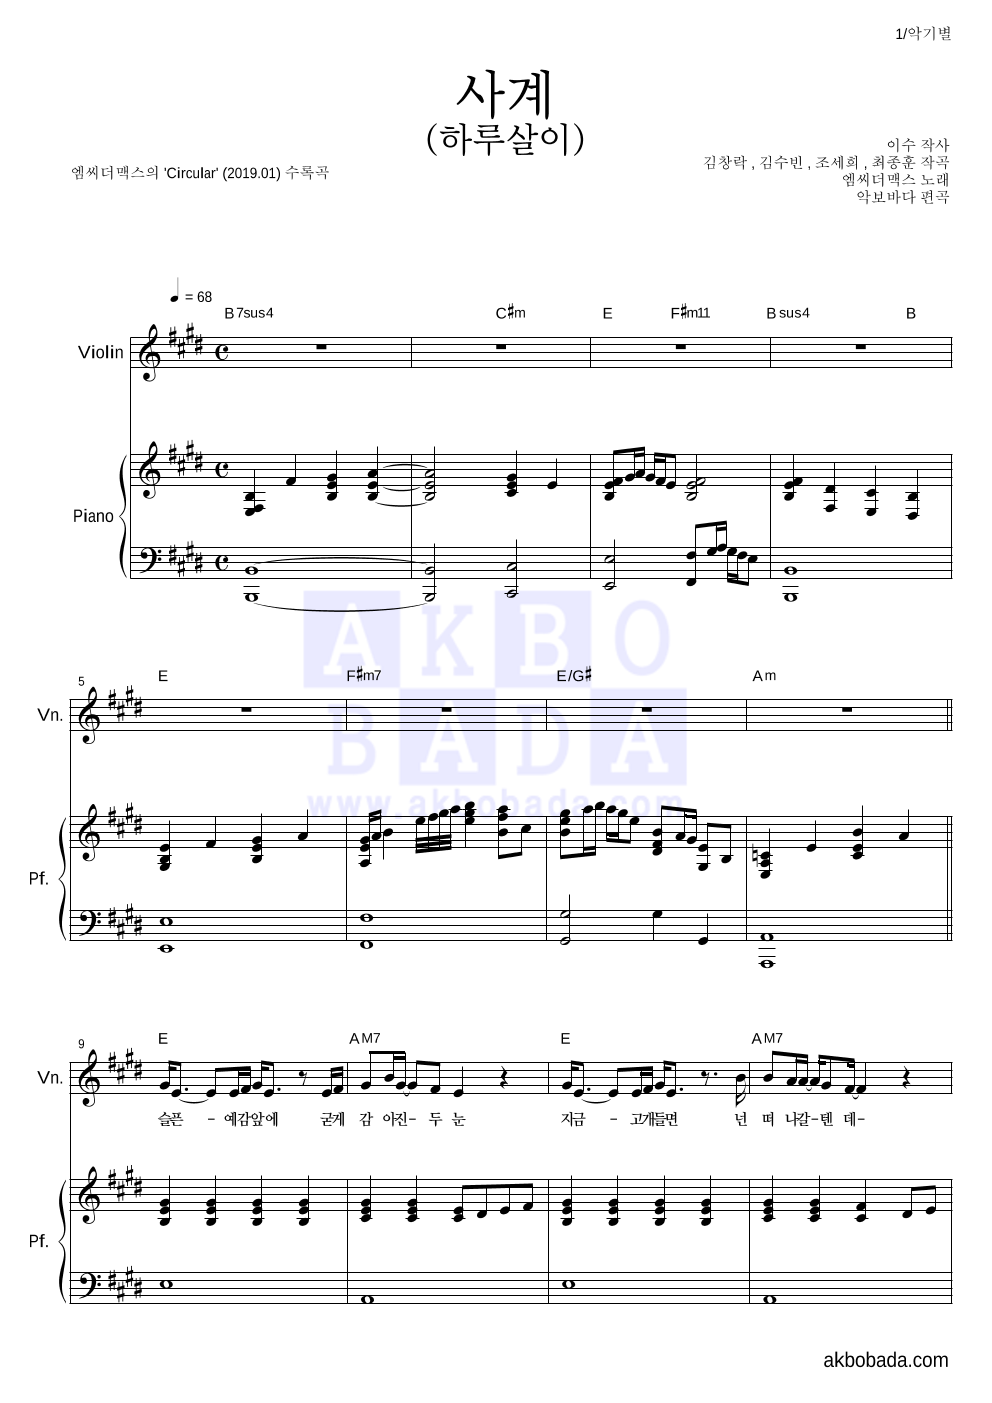 엠씨더맥스 - 사계(하루살이) 바이올린&피아노 악보 